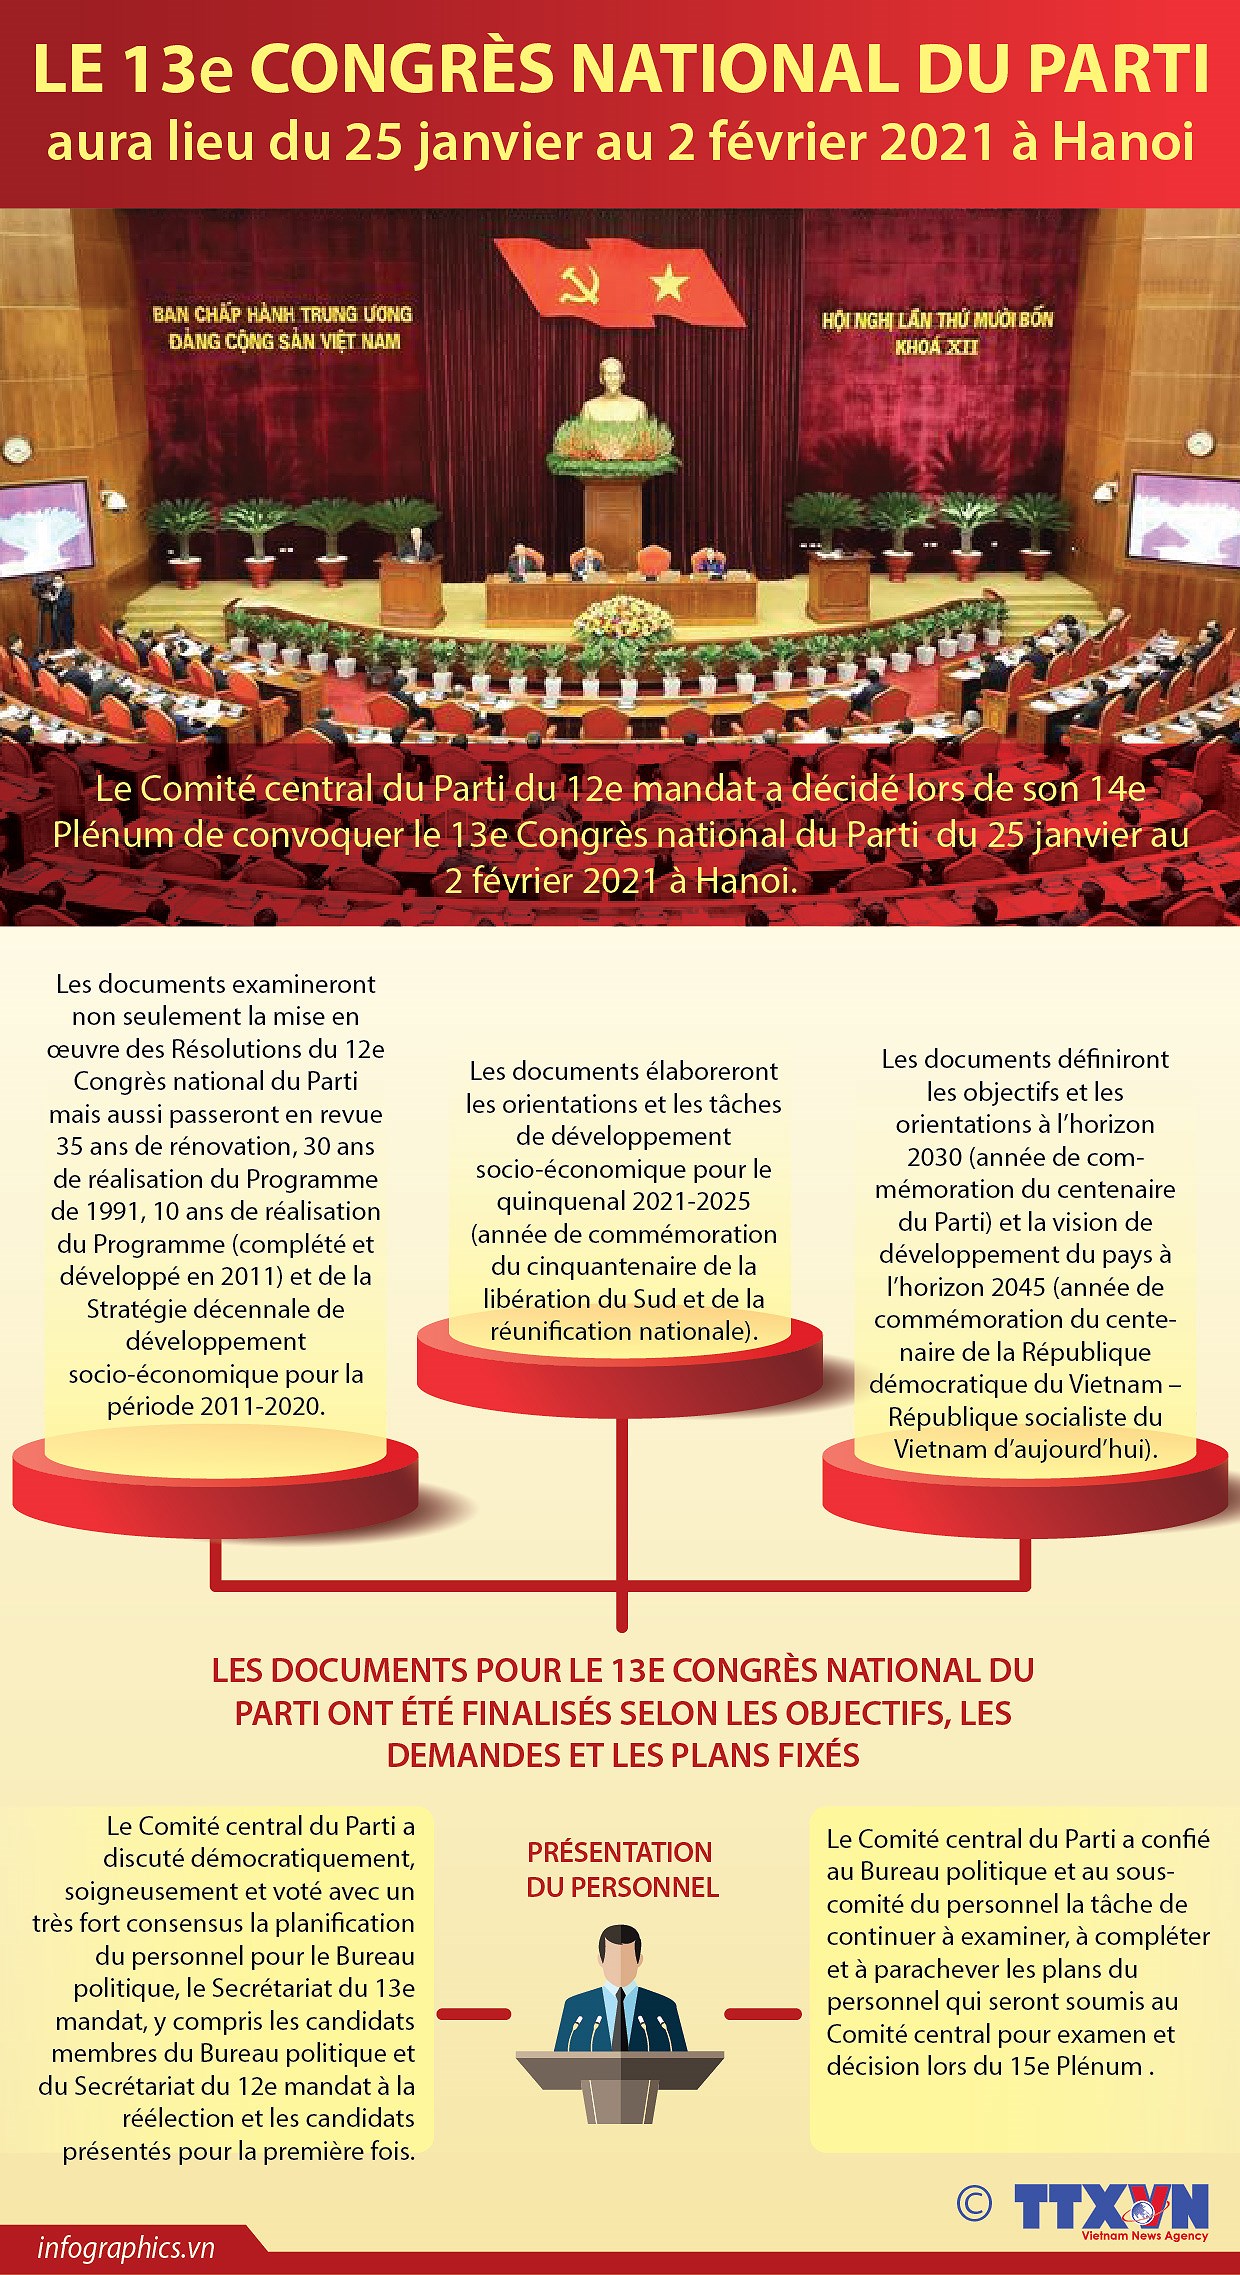 Le 13e Congres national du Parti aura lieu du 25 janvier au 2 fevrier 2021 a Hanoi hinh anh 1